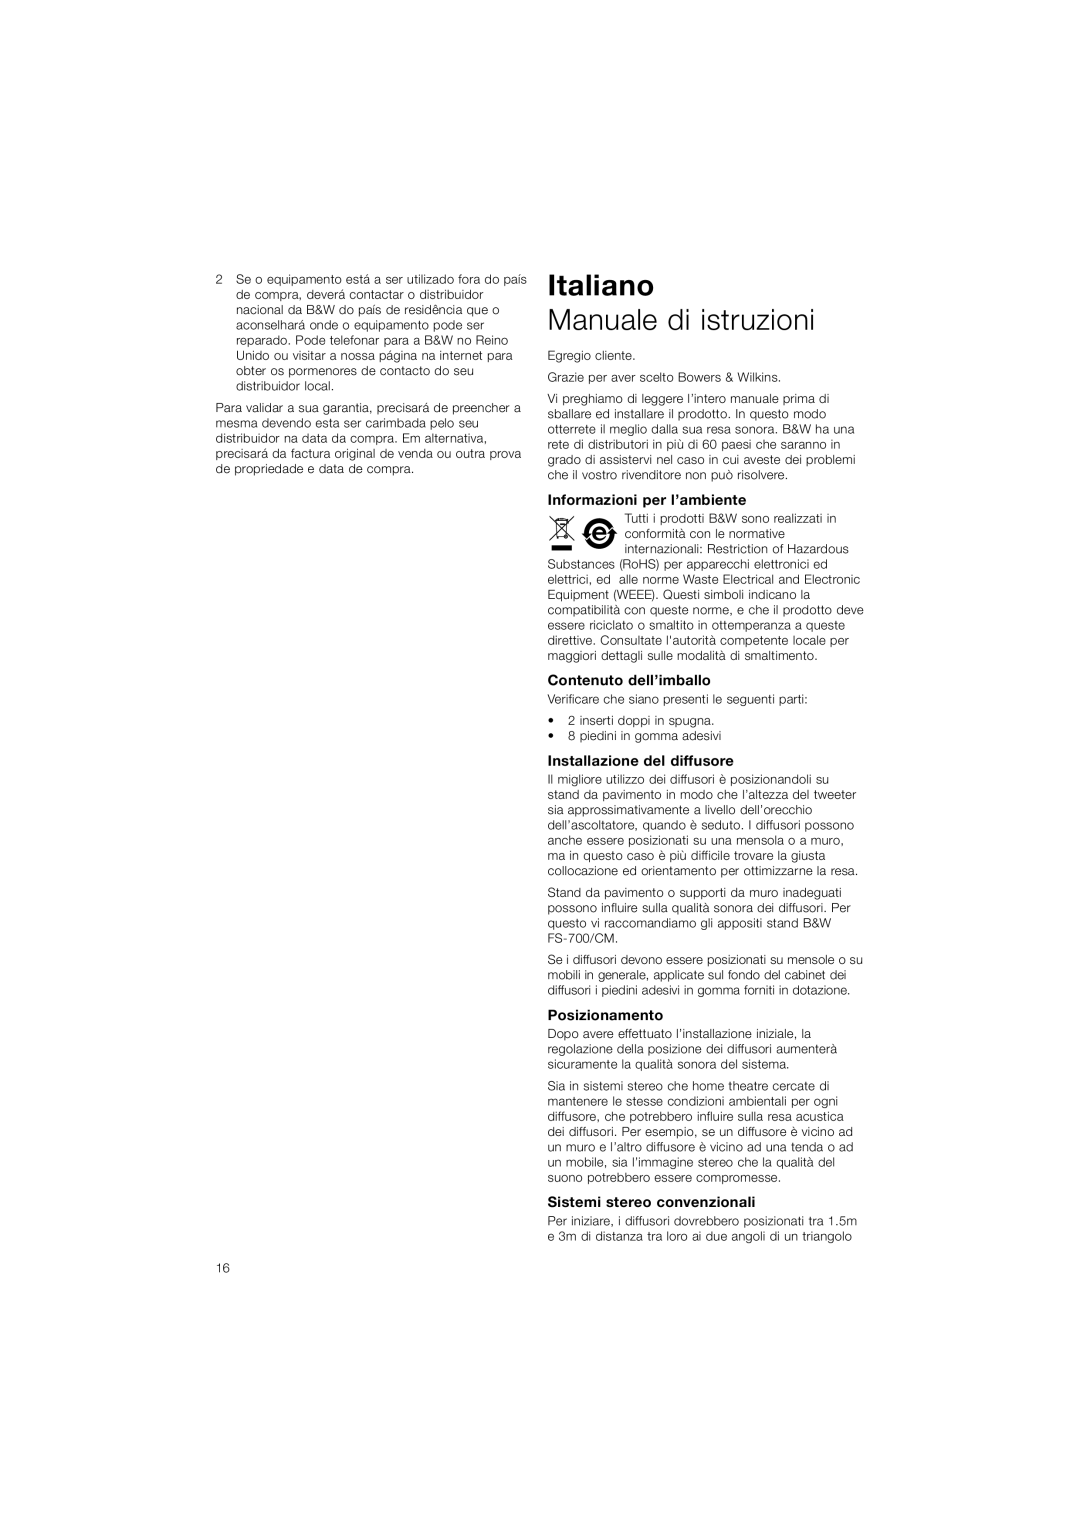 Bowers & Wilkins CM5 Italiano, Manuale di istruzioni, Informazioni per l’ambiente, Contenuto dell’imballo, Posizionamento 